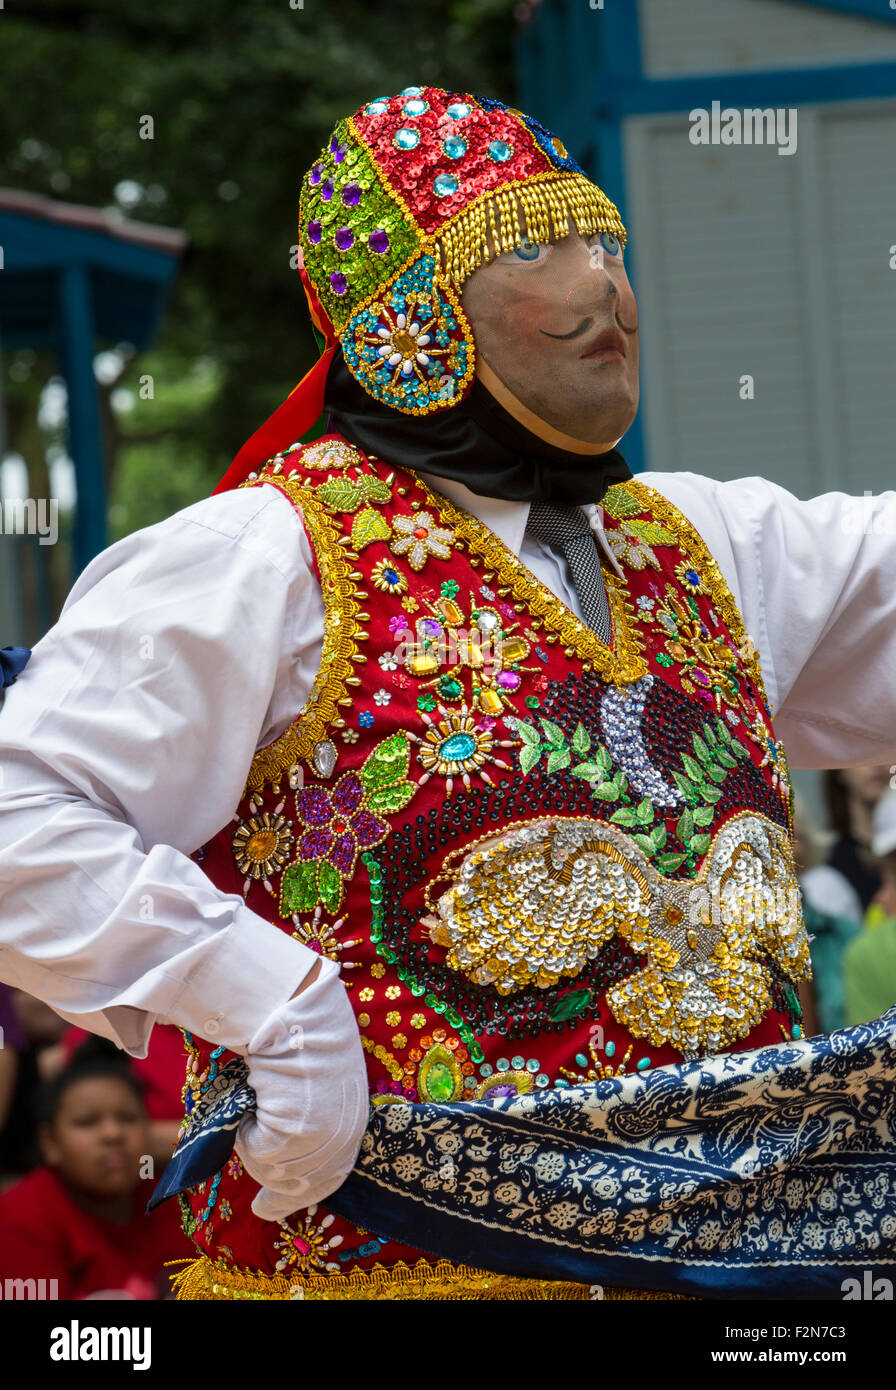 Peruvian Contradanza Troupe Performs Celebration of the Fiesta de la Virgen del Carmen de Paucartambo. Stock Photo